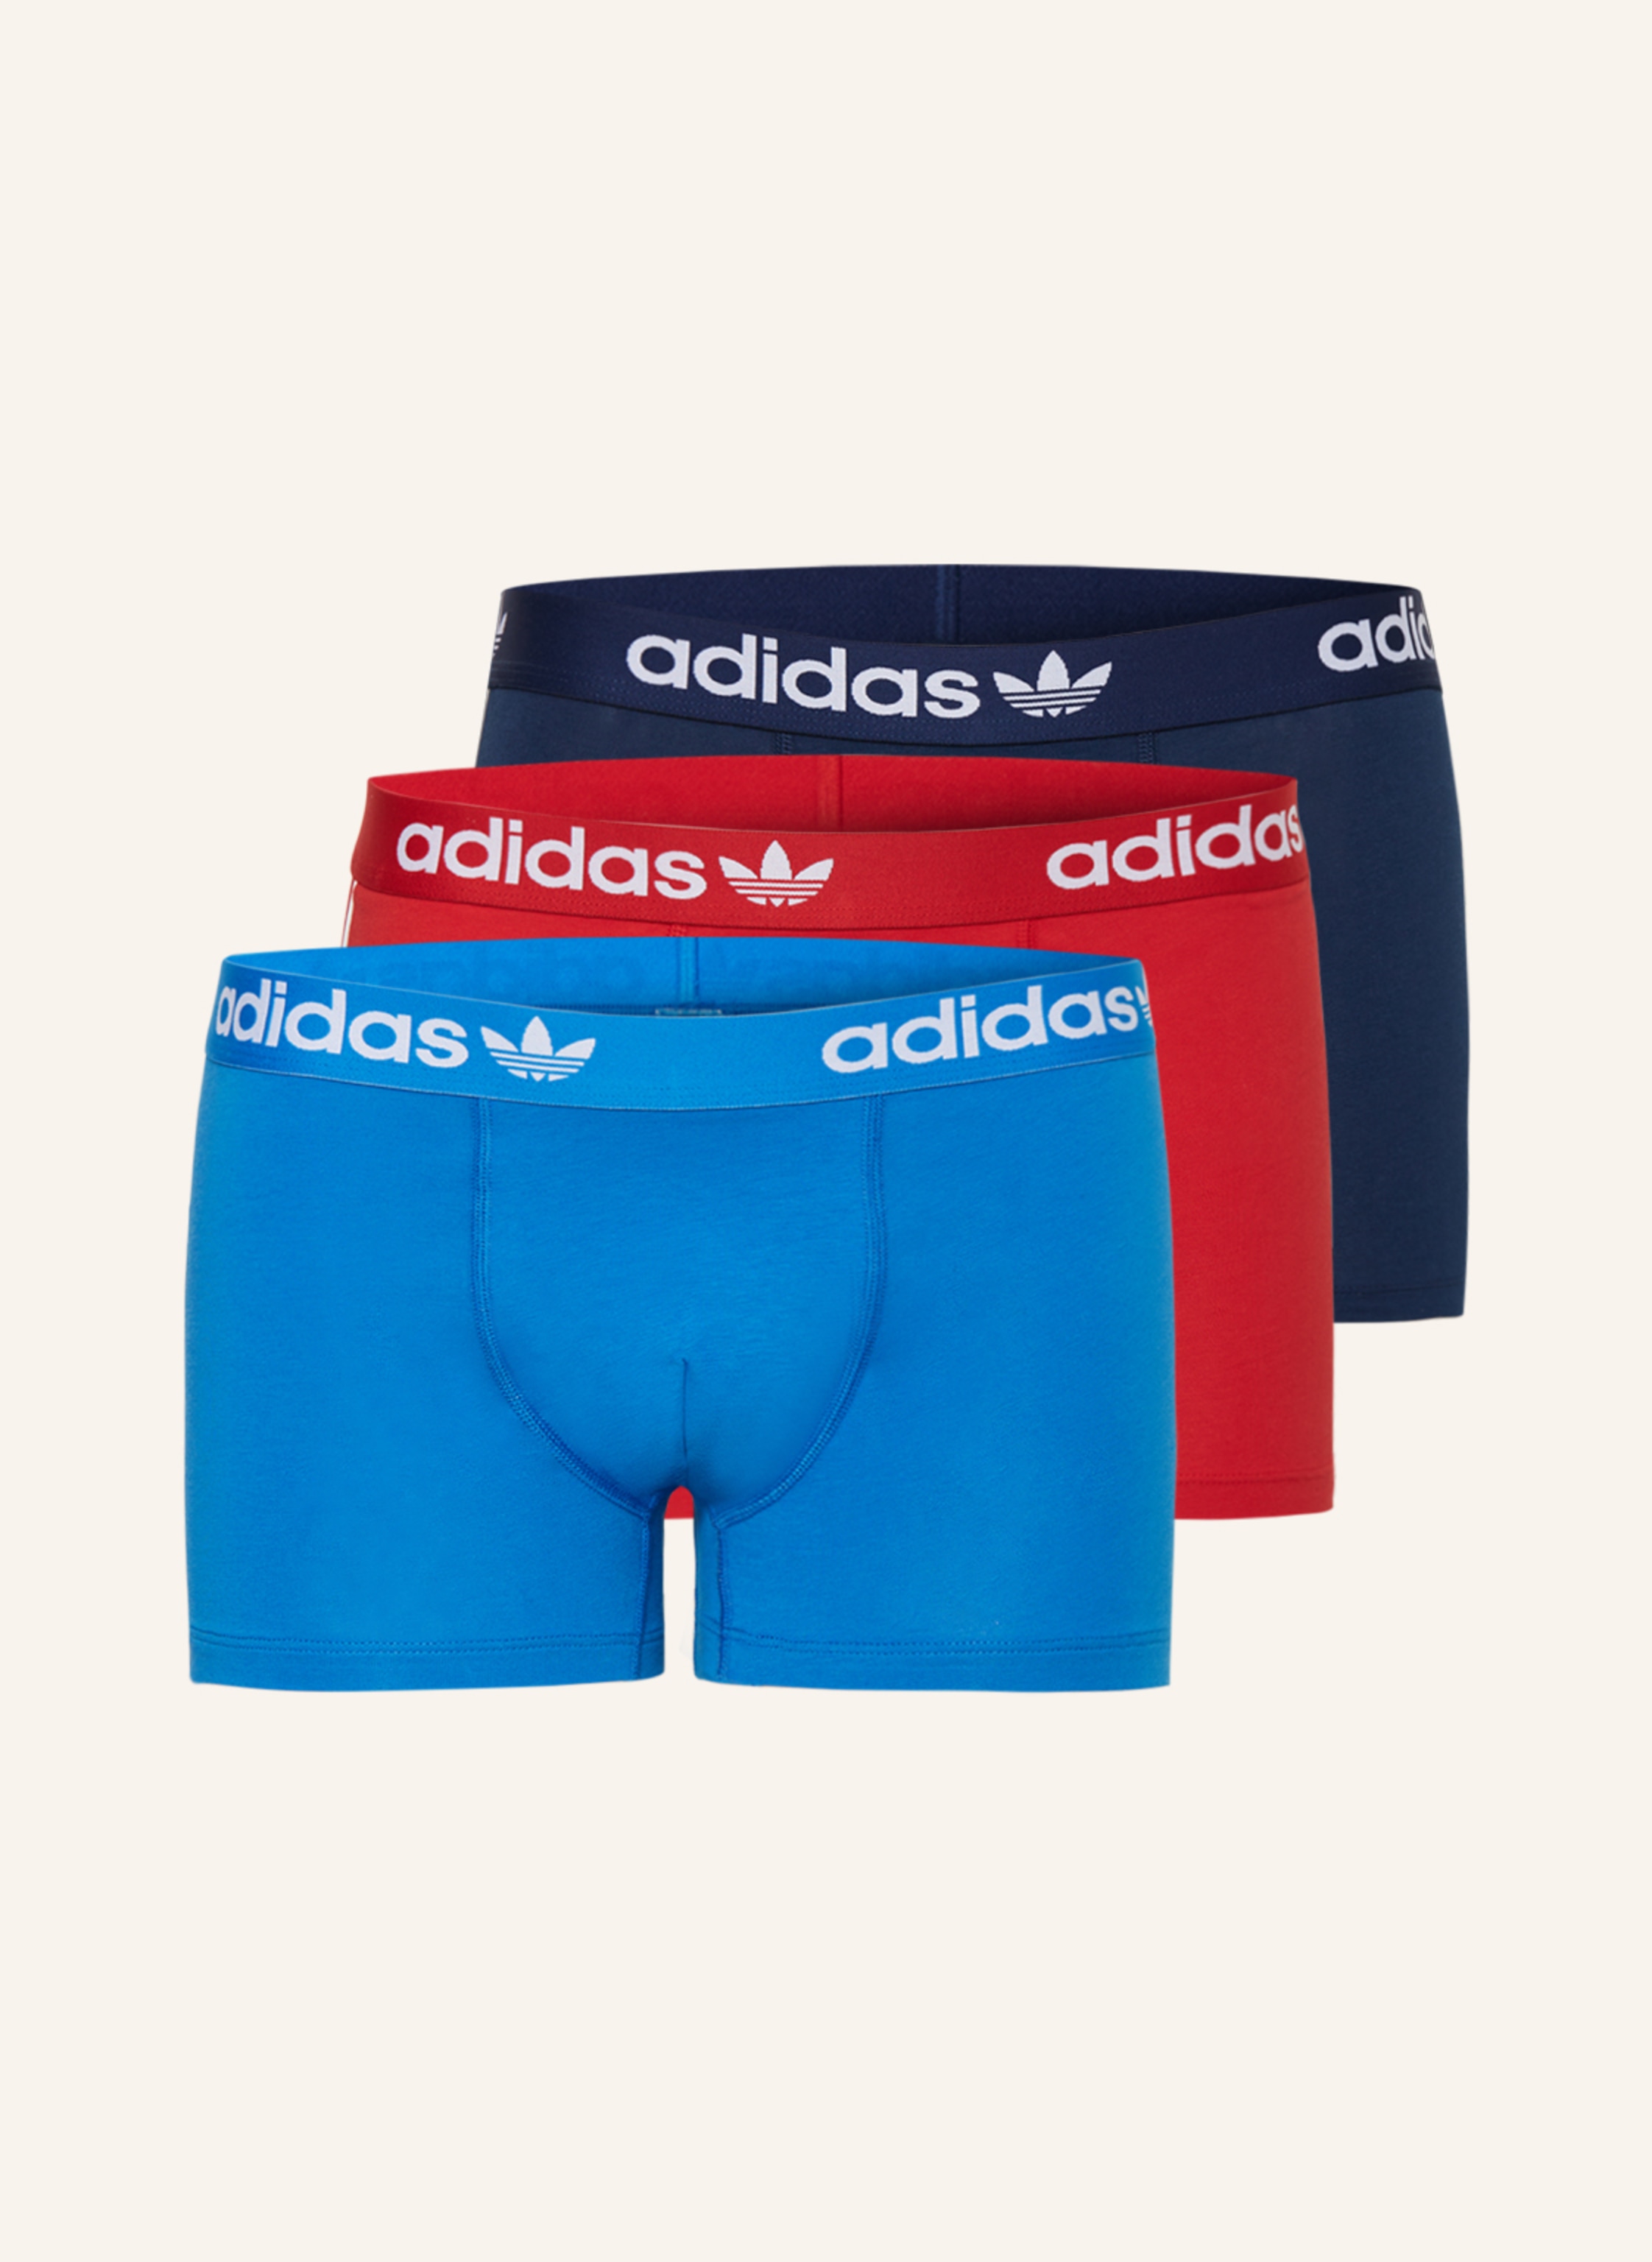 adidas Originals 3er-Pack Boxershorts 3-STRIPES rot FLEX dunkelblau/ COTTON in COMFORT blau